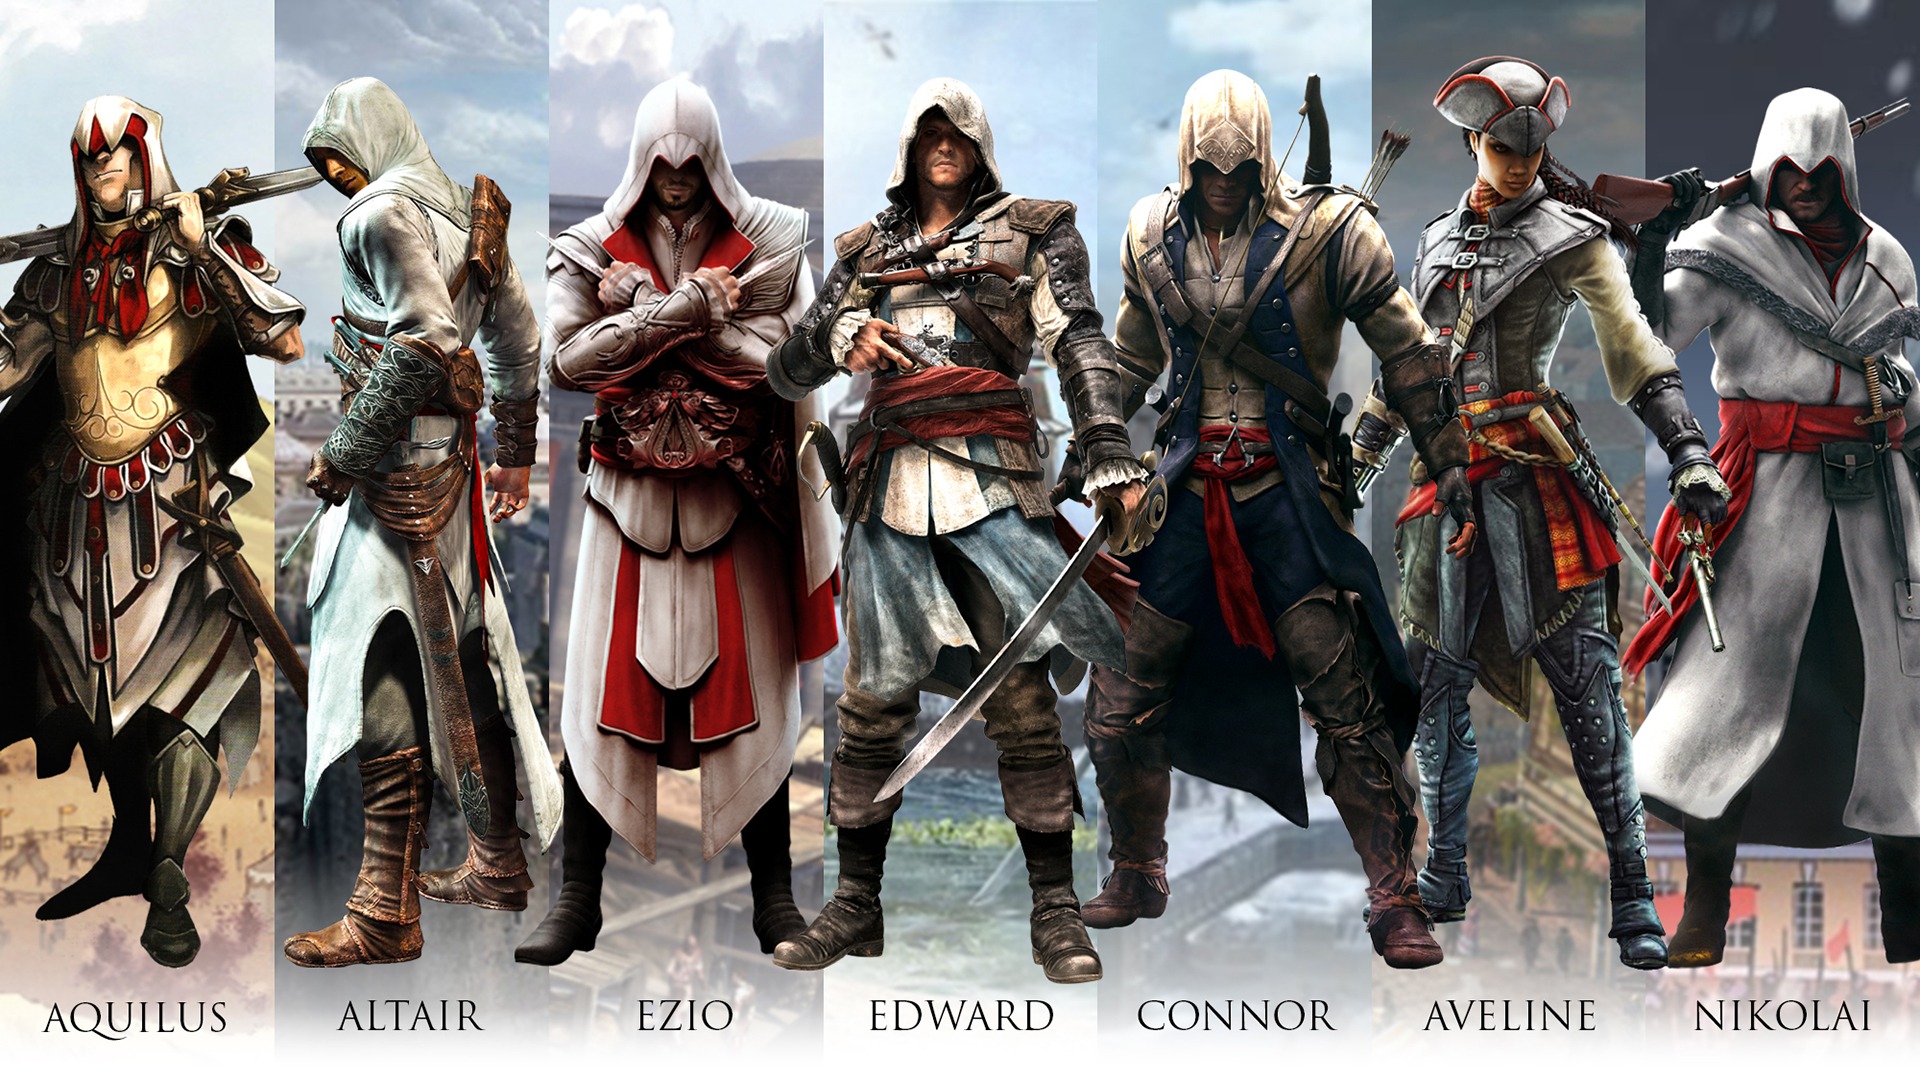 Ubisoft explica porque não existem personagens femininas em Assassin's Creed:  Unity - Combo Infinito